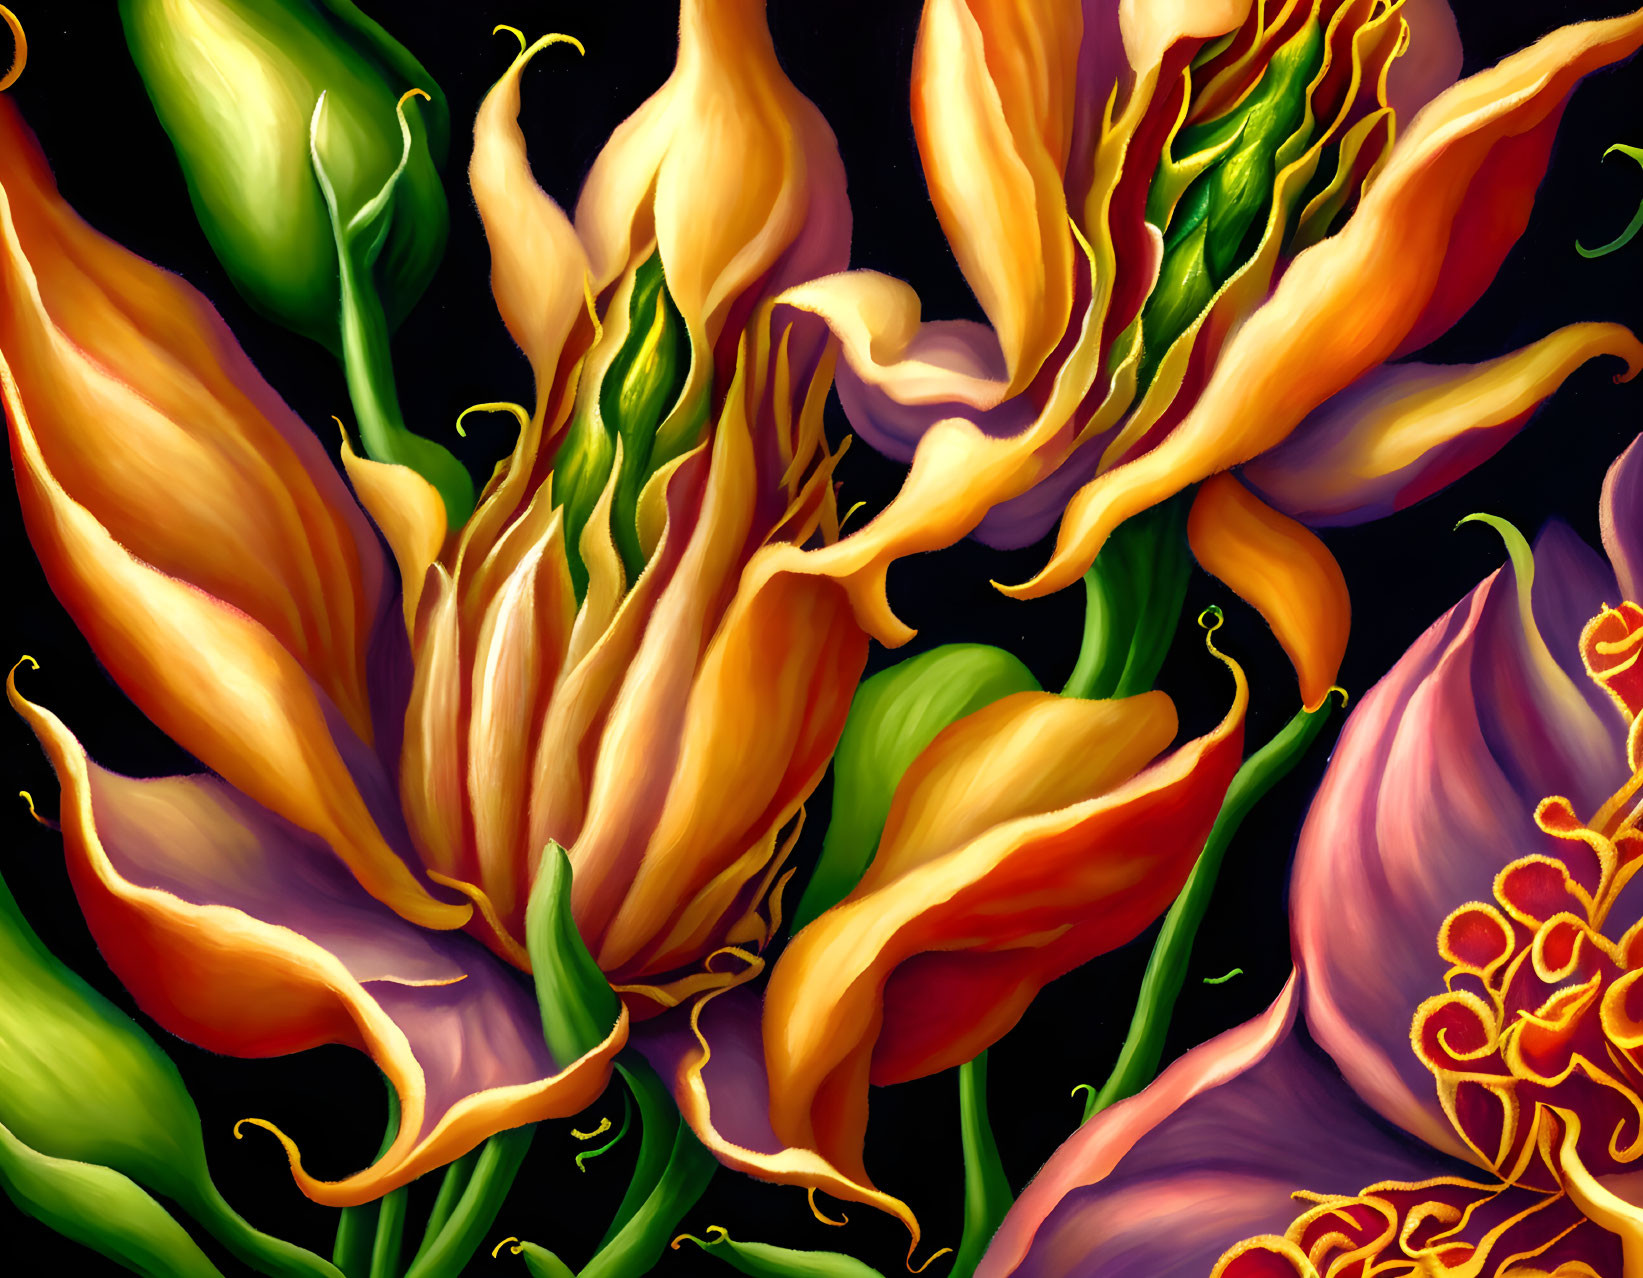 Detailed Botanical Illustration of Orange-Yellow Flowers on Dark Background